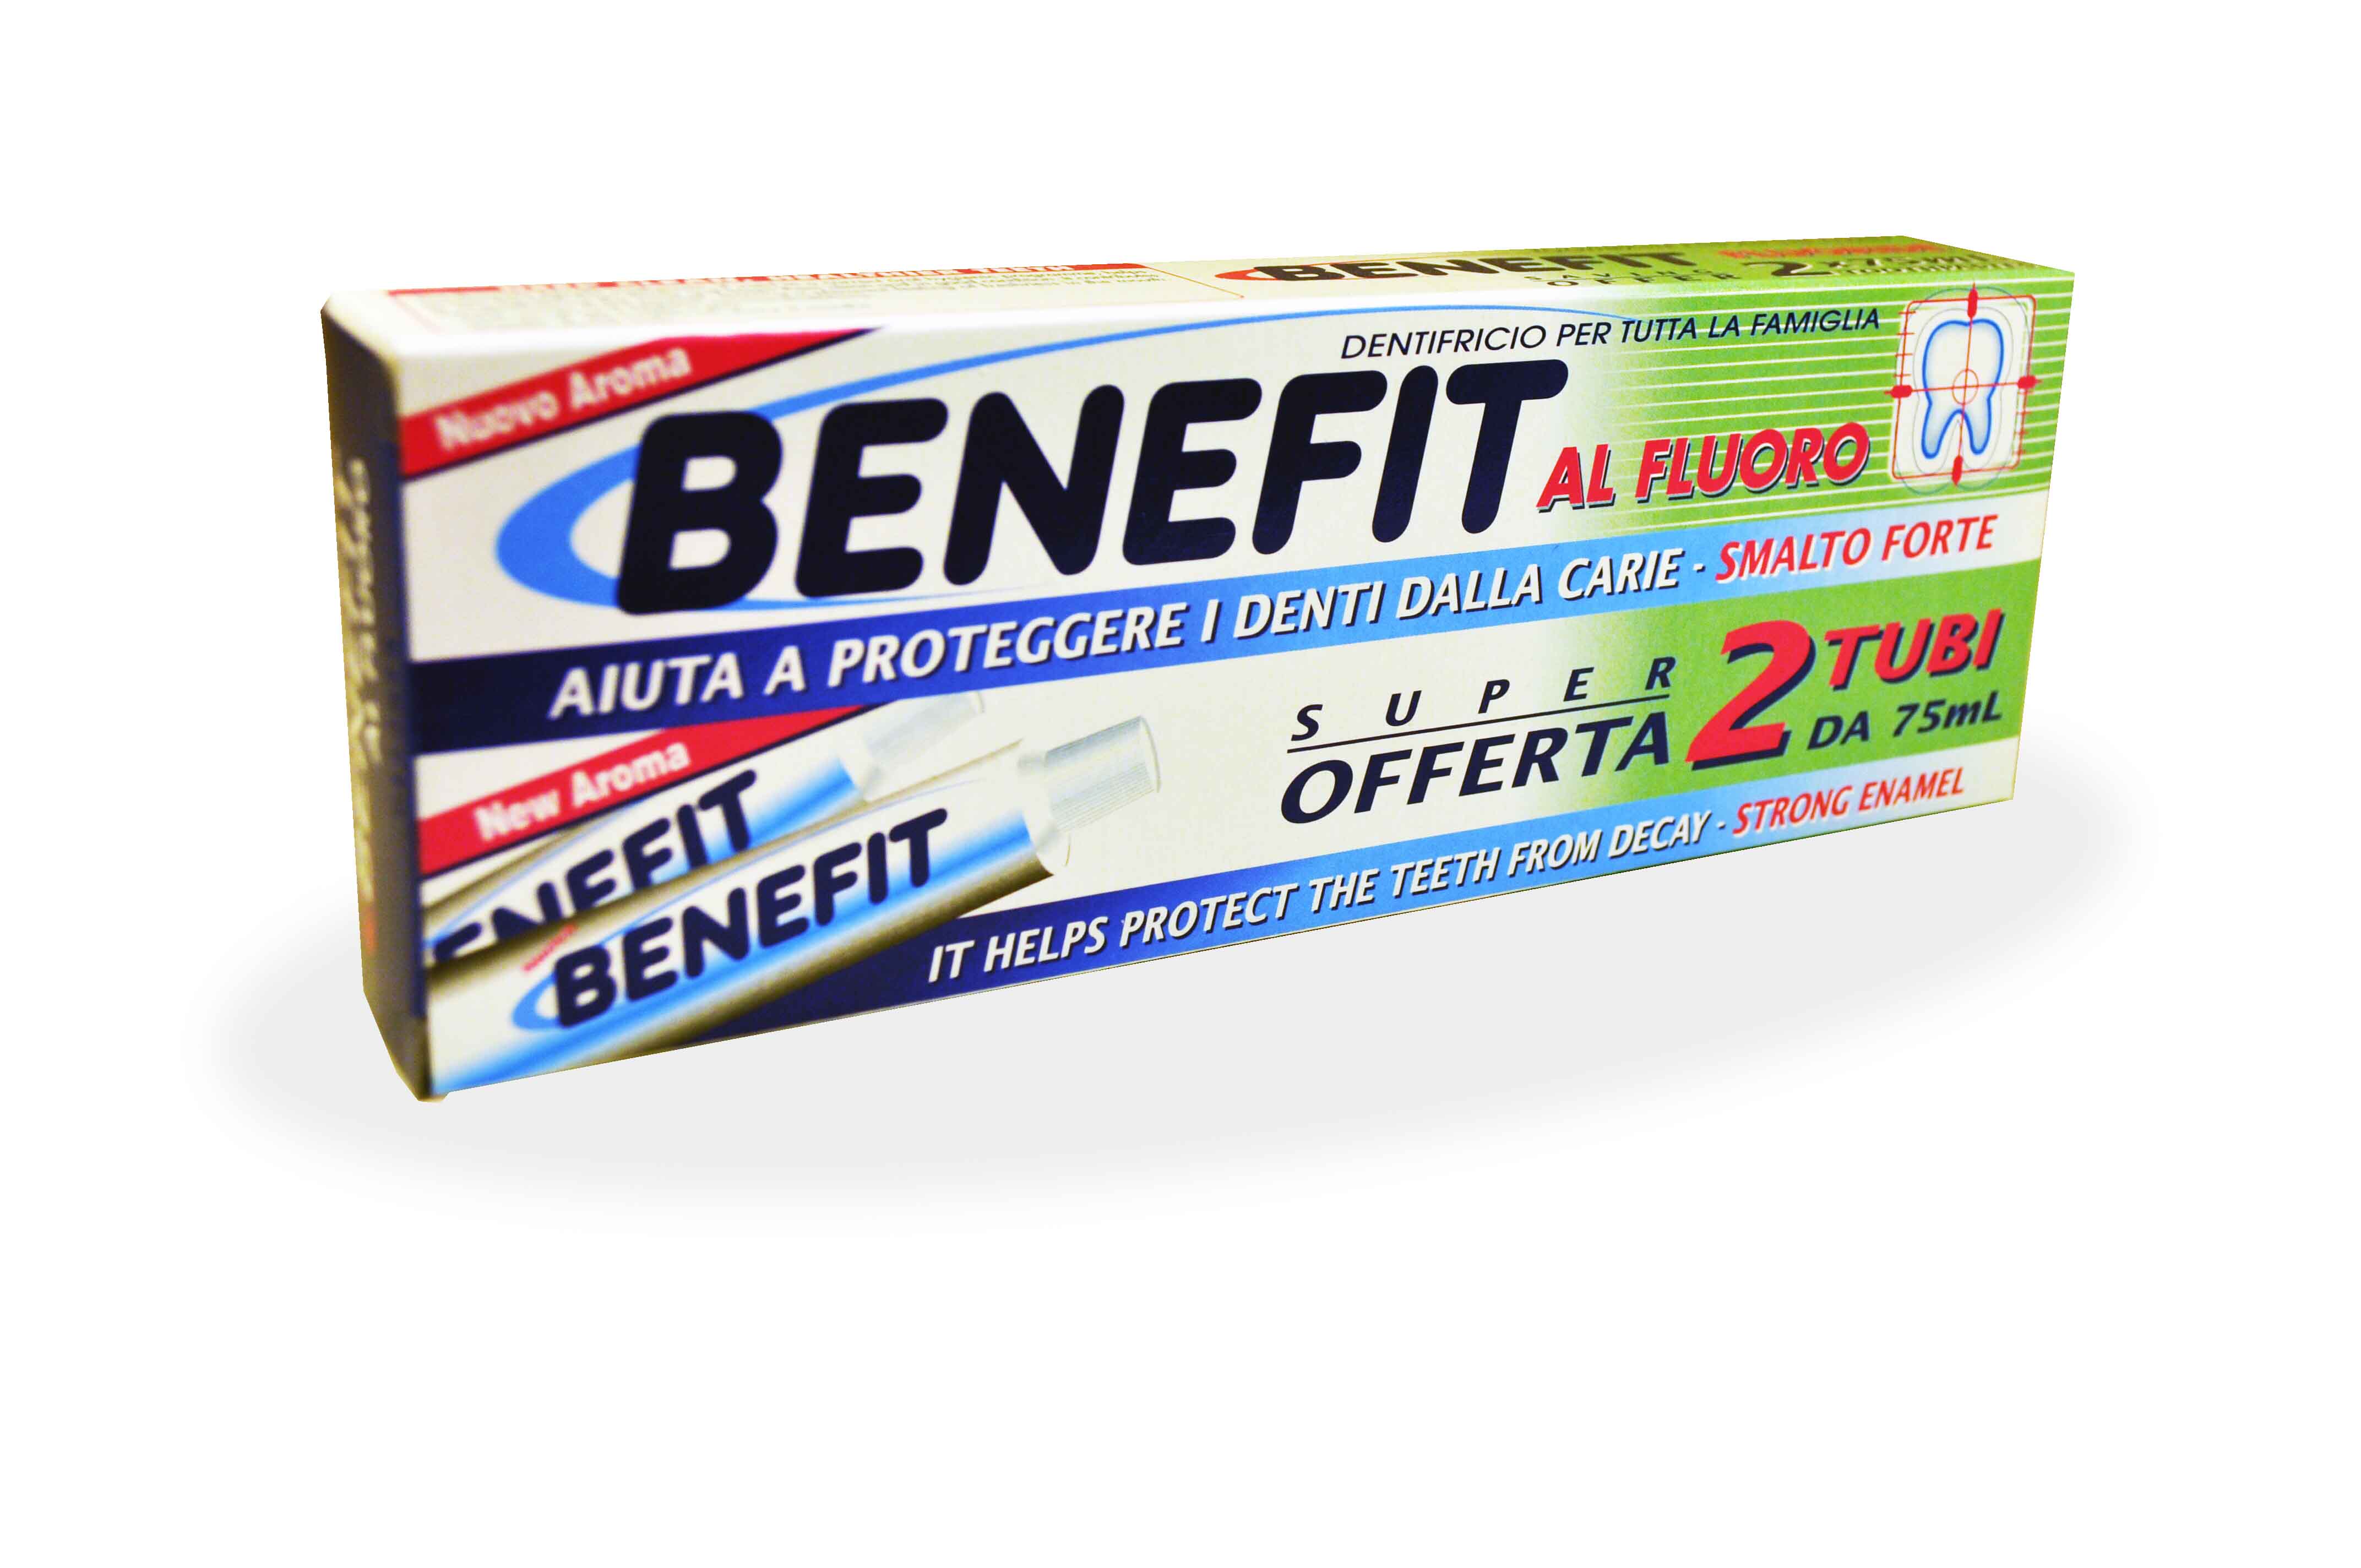 Image of Benefit Dentifricio Benefit 2 Confezioni 75 ml 8000630040140